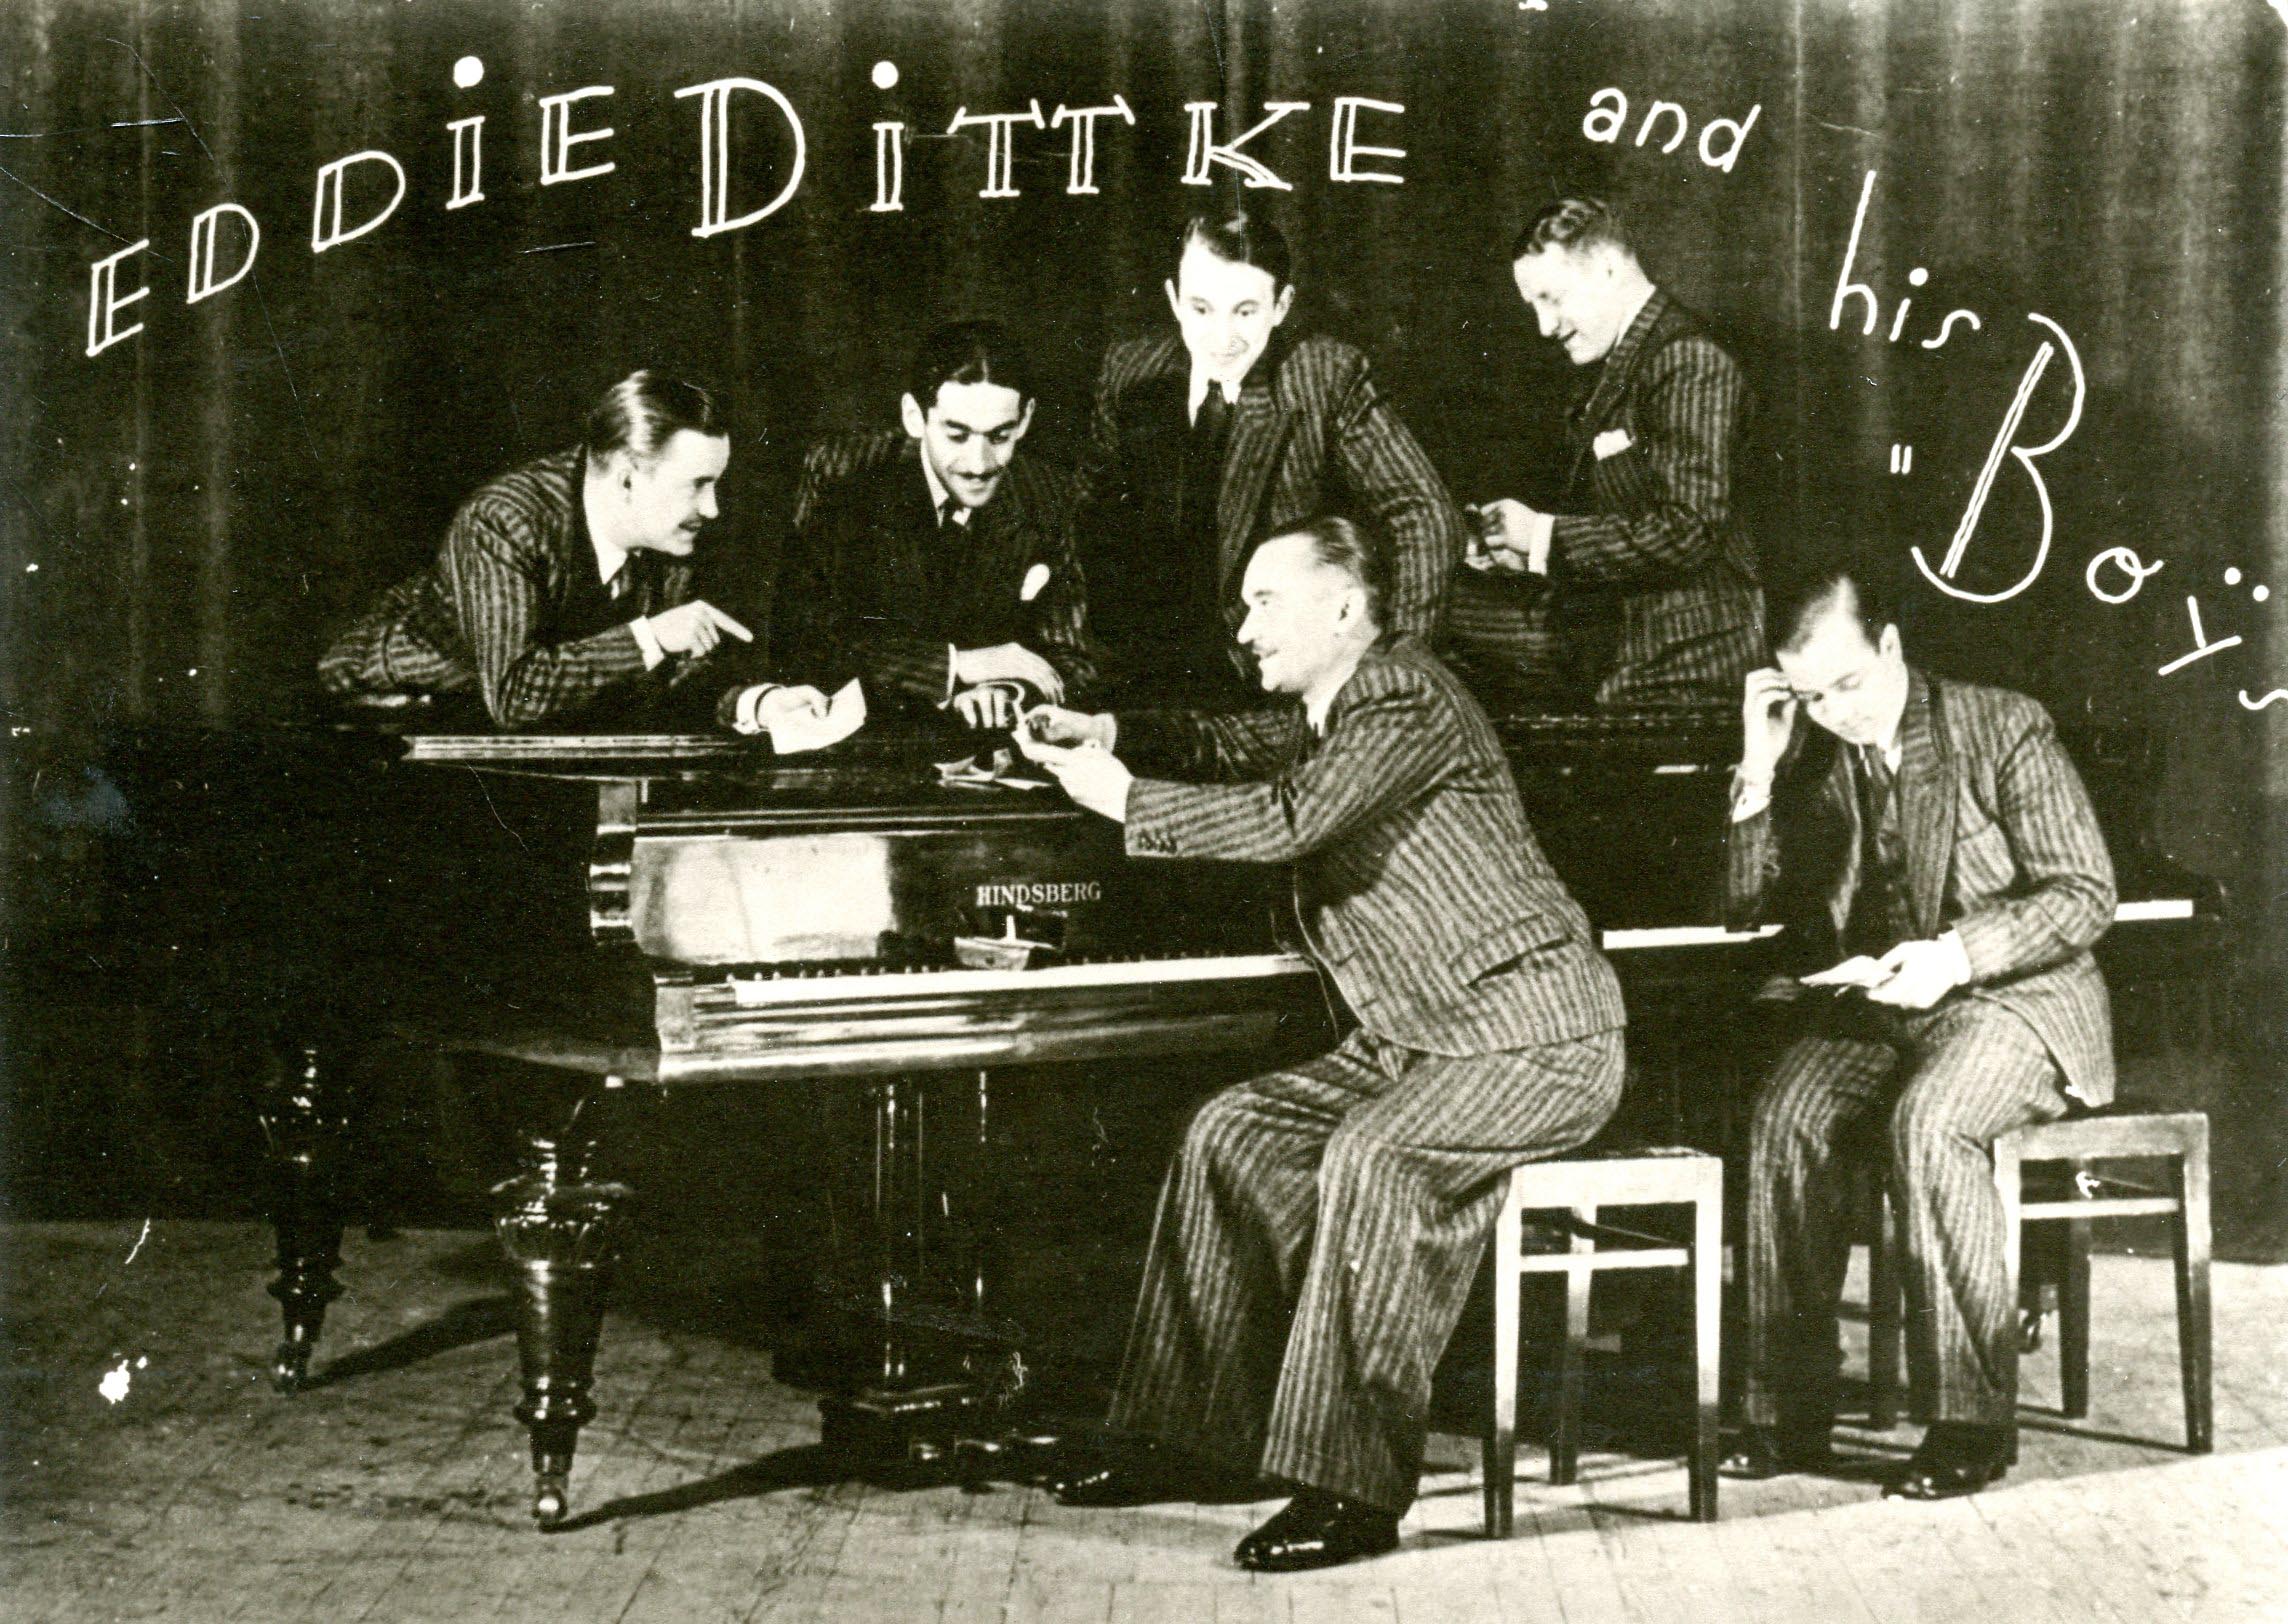 Eddie Dittke and his Boys